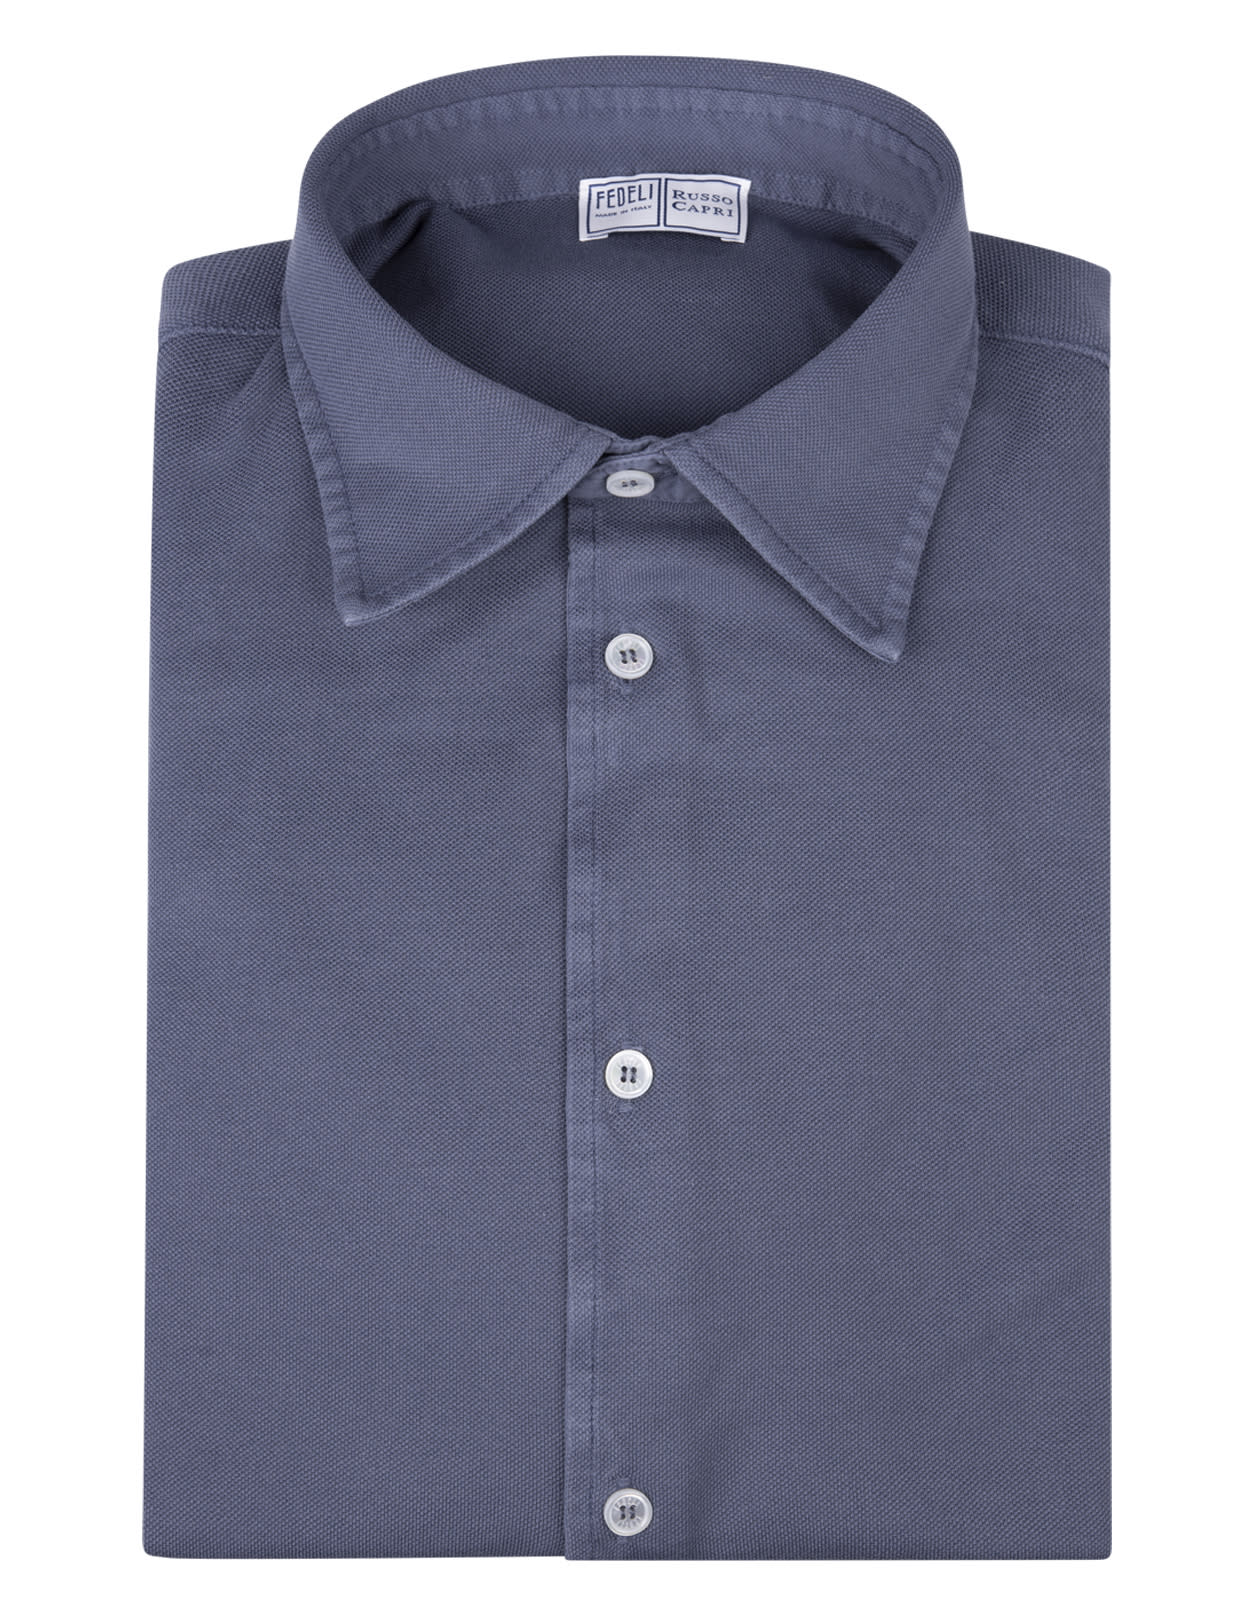 Fedeli Shirt In Avio Blue Oxford Cotton